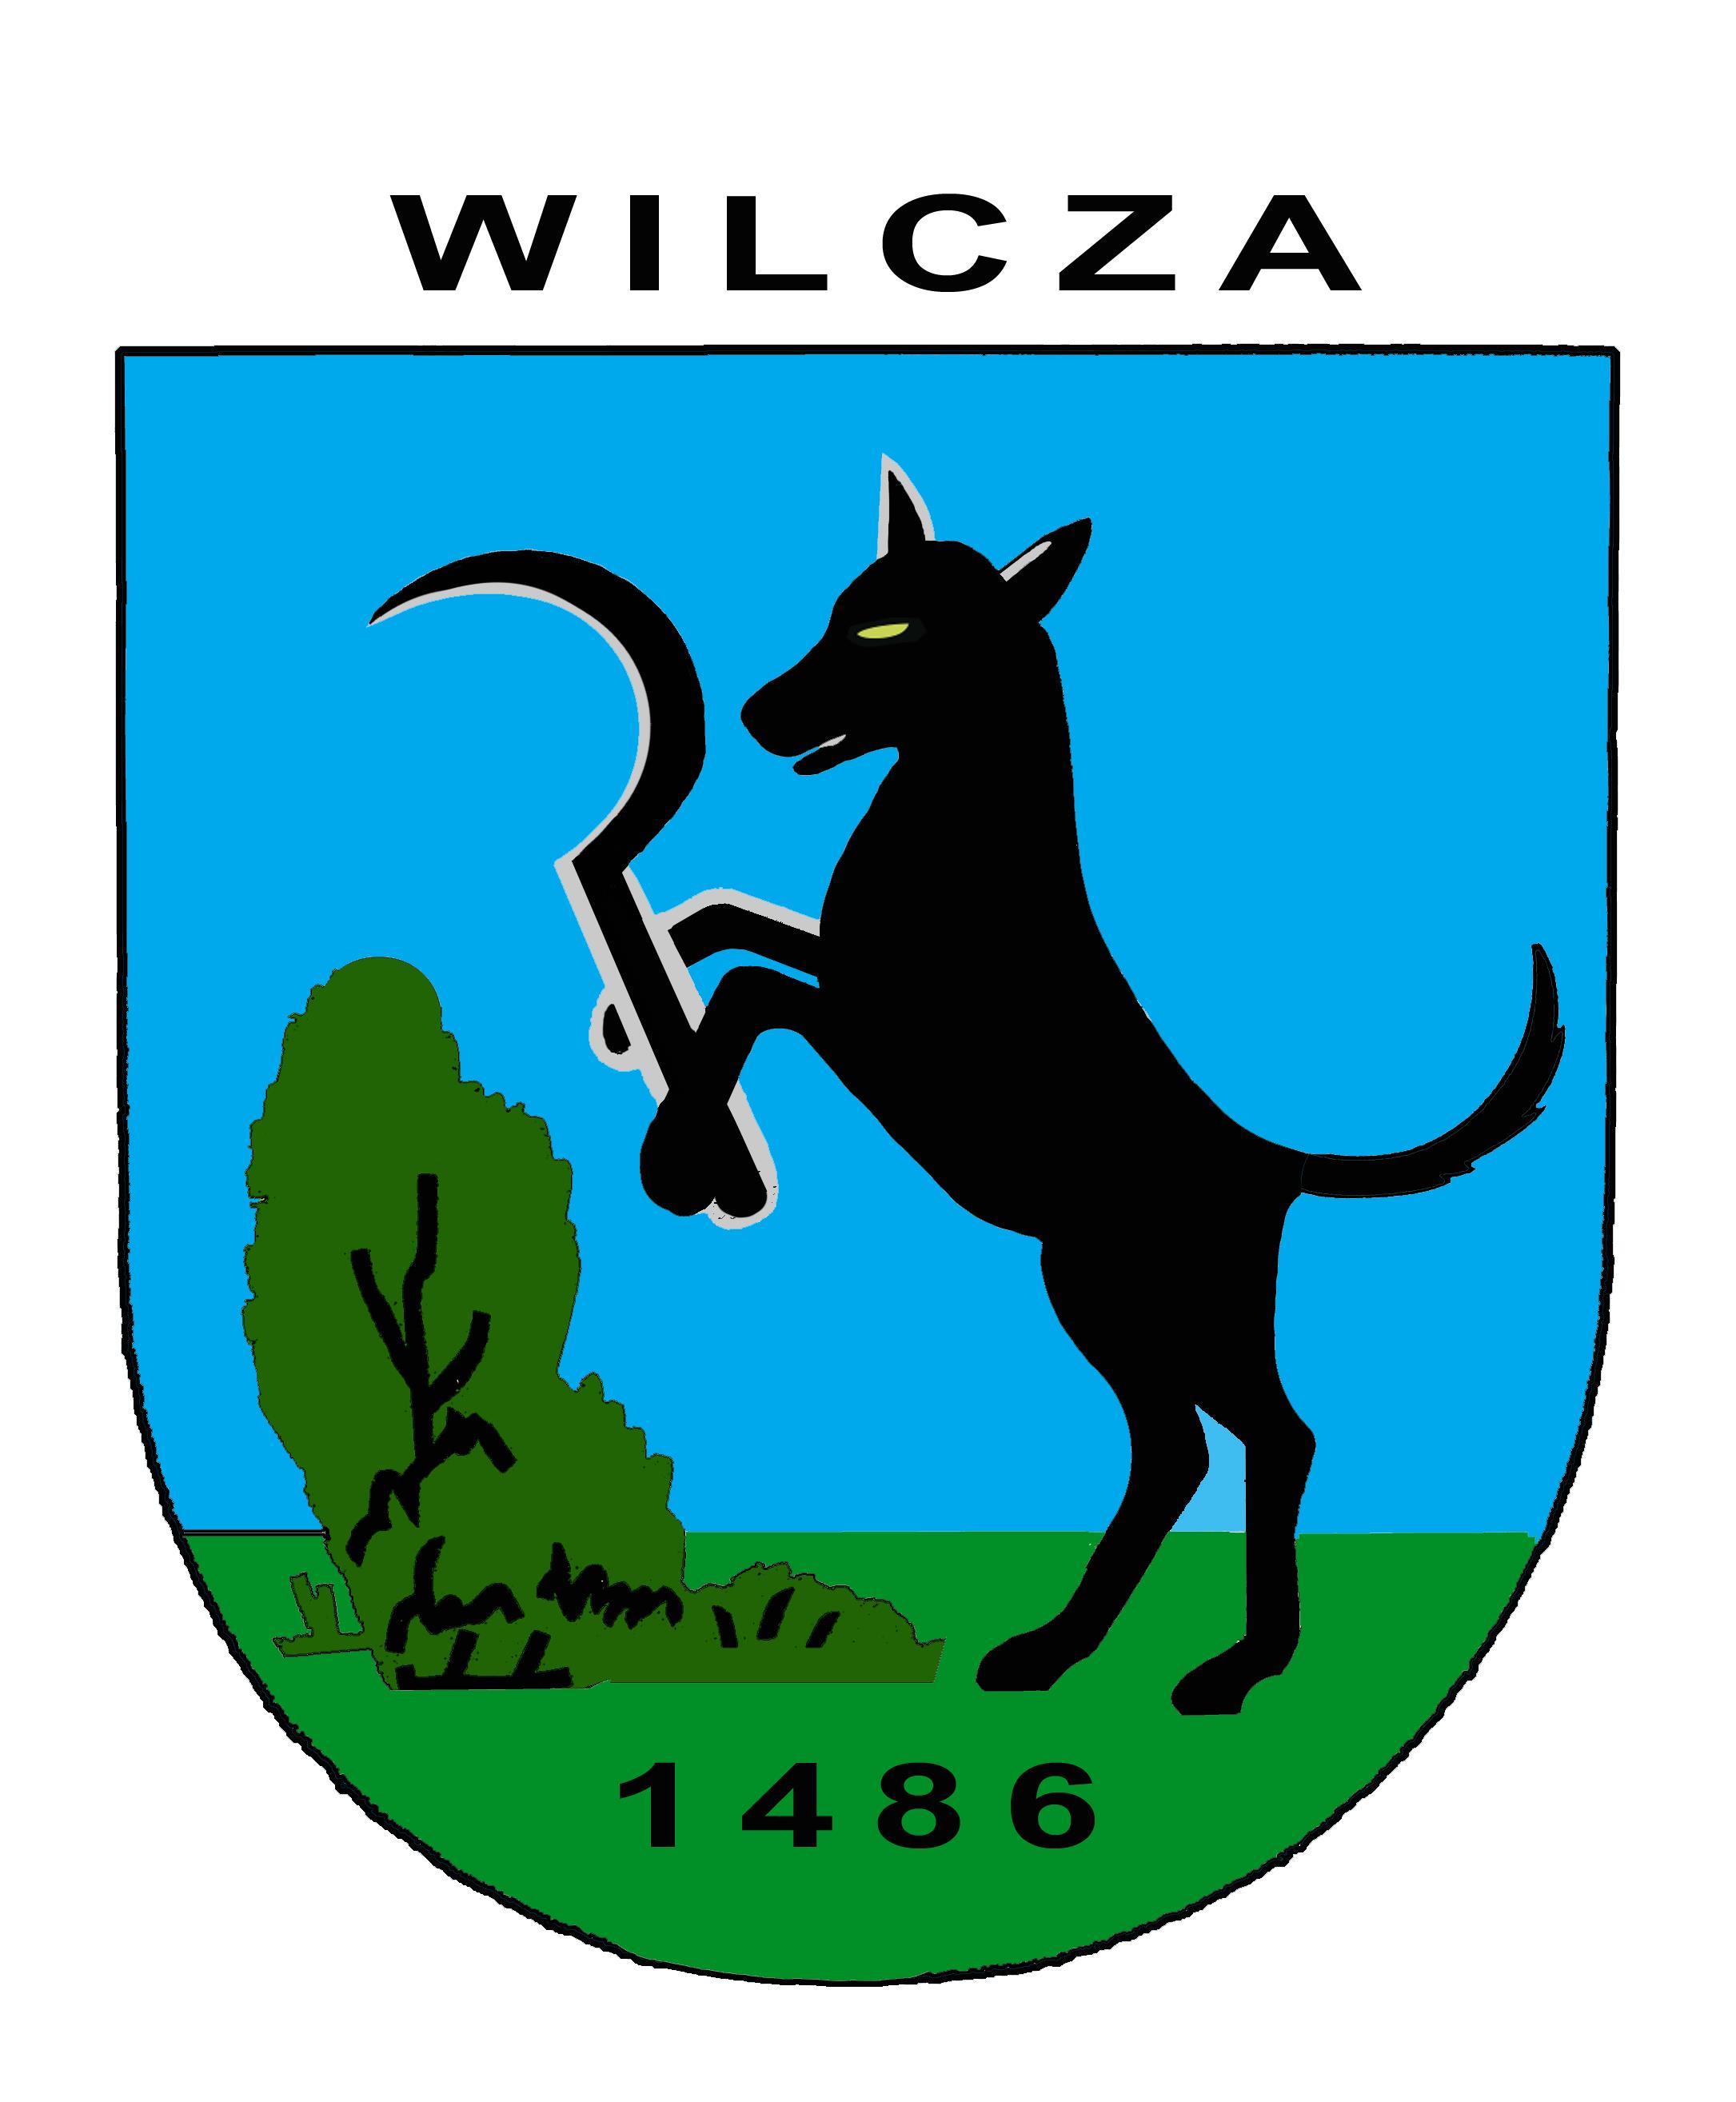 Wilcza